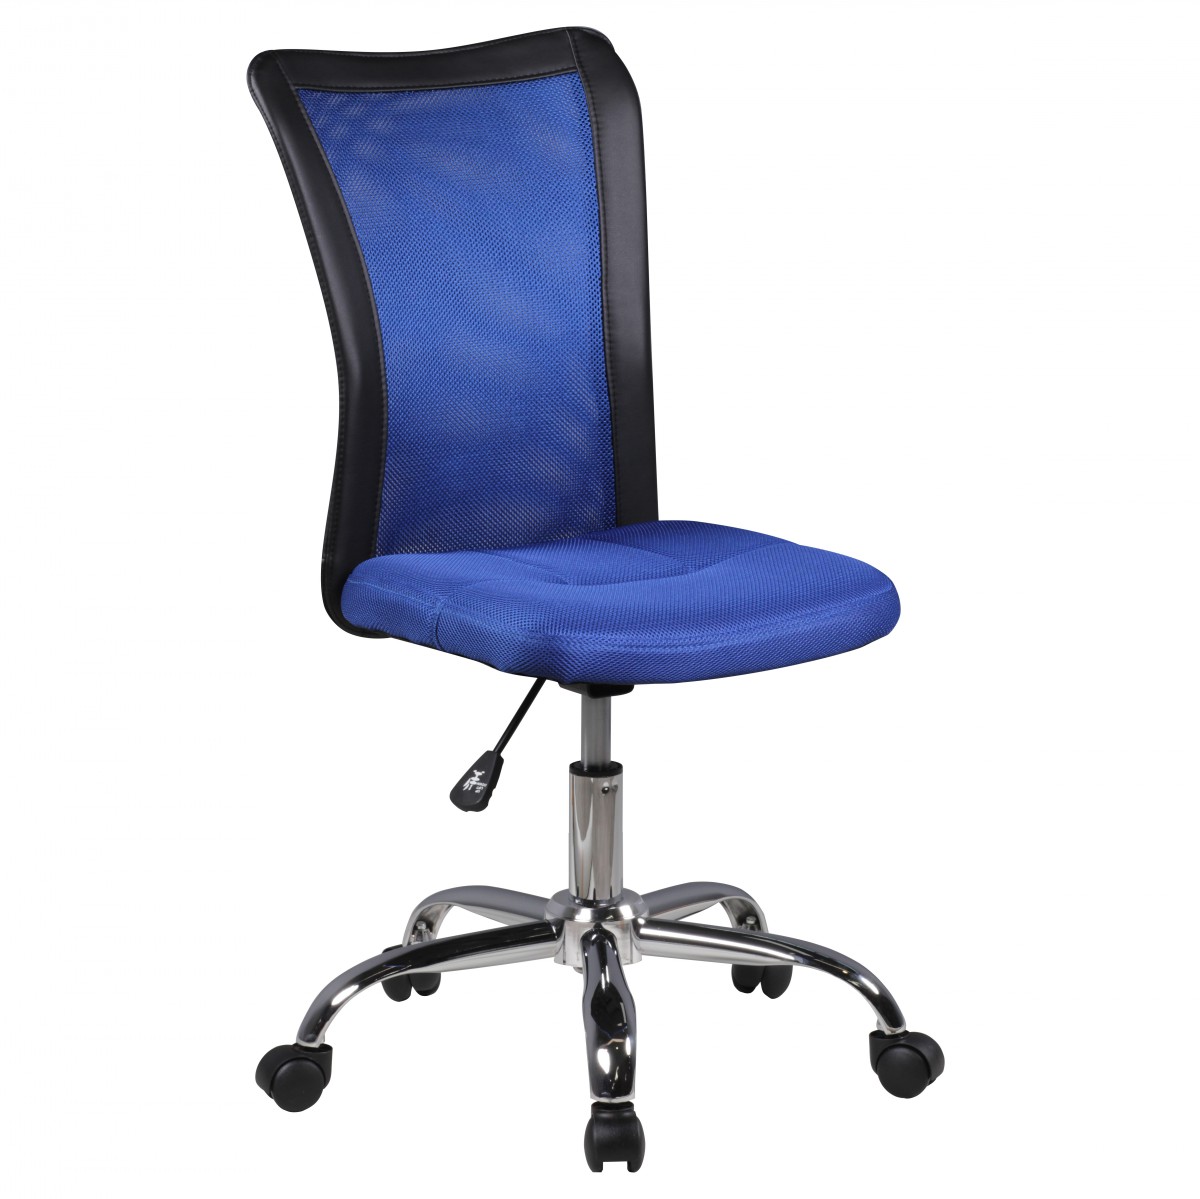 [A09466] Chaise de bureau pour enfant LUKAS bleu pour enfants à partir de 6 ans avec dossier et roulettes souples